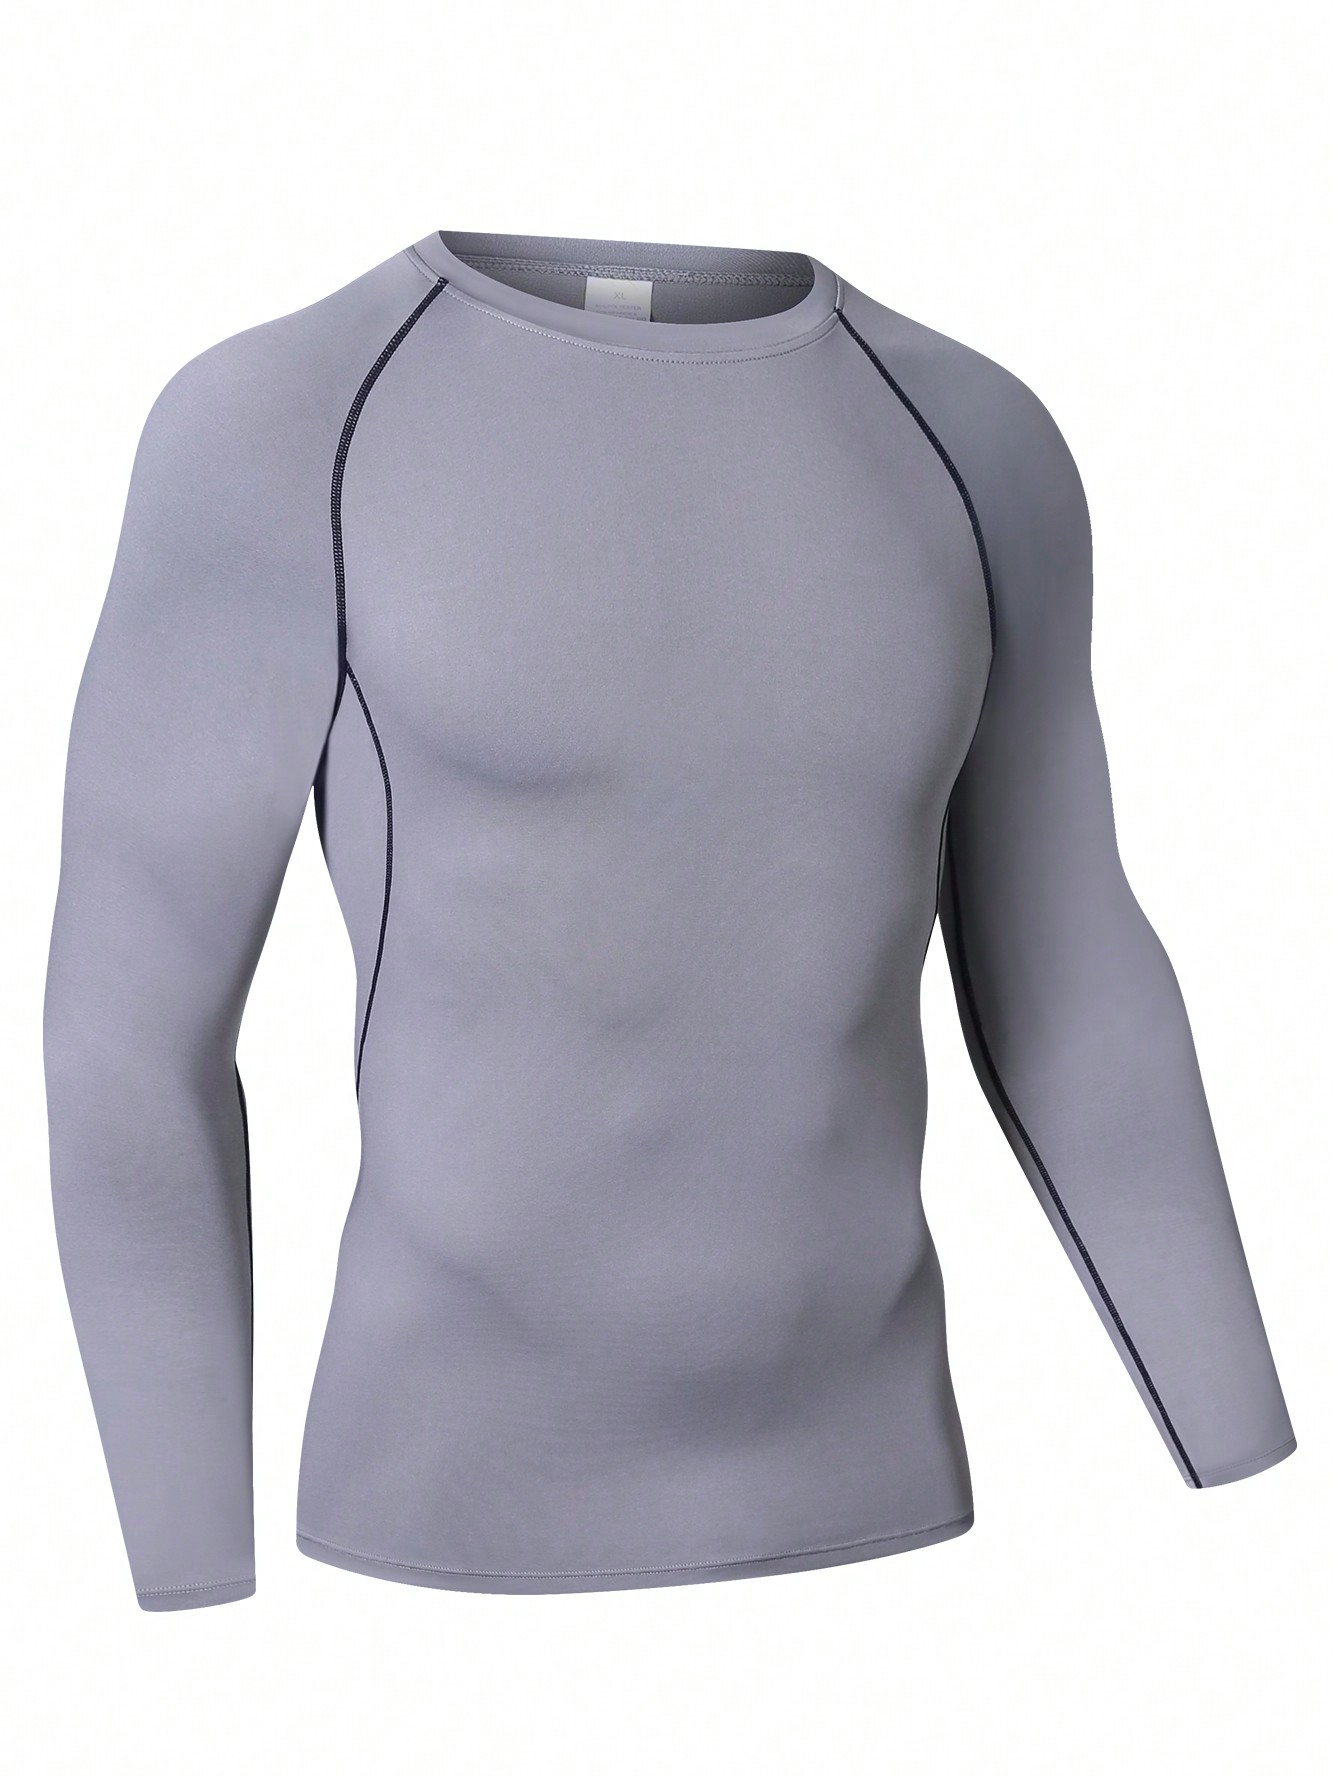 Мужская эластичная компрессионная рубашка для фитнеса с длинными рукавами, серый